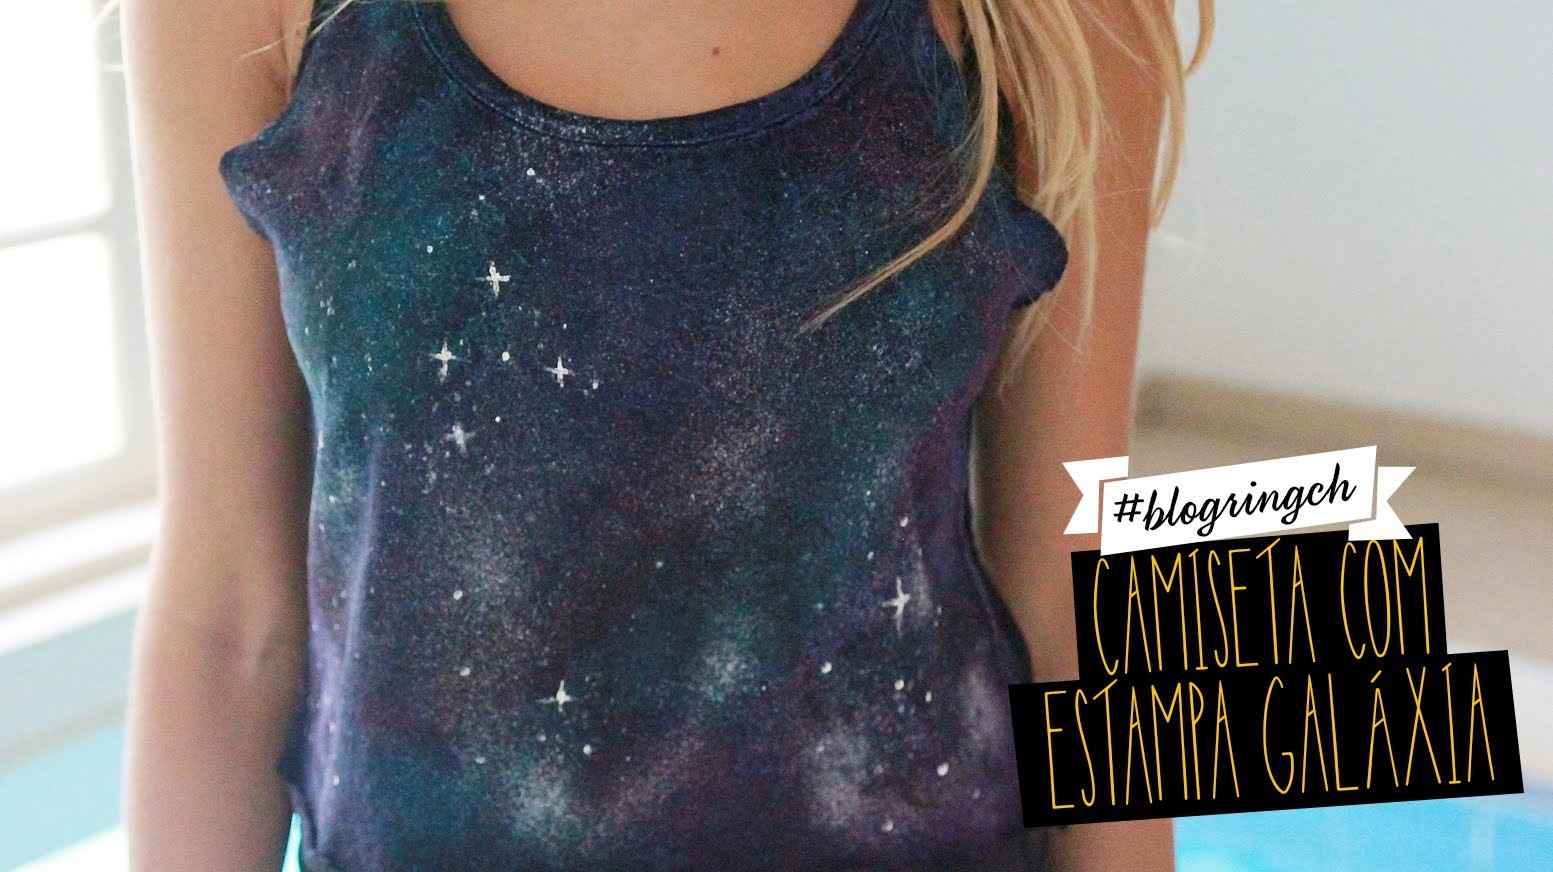 #blogringCH: Isa Scherer ensina a fazer uma camiseta com estampa galaxy